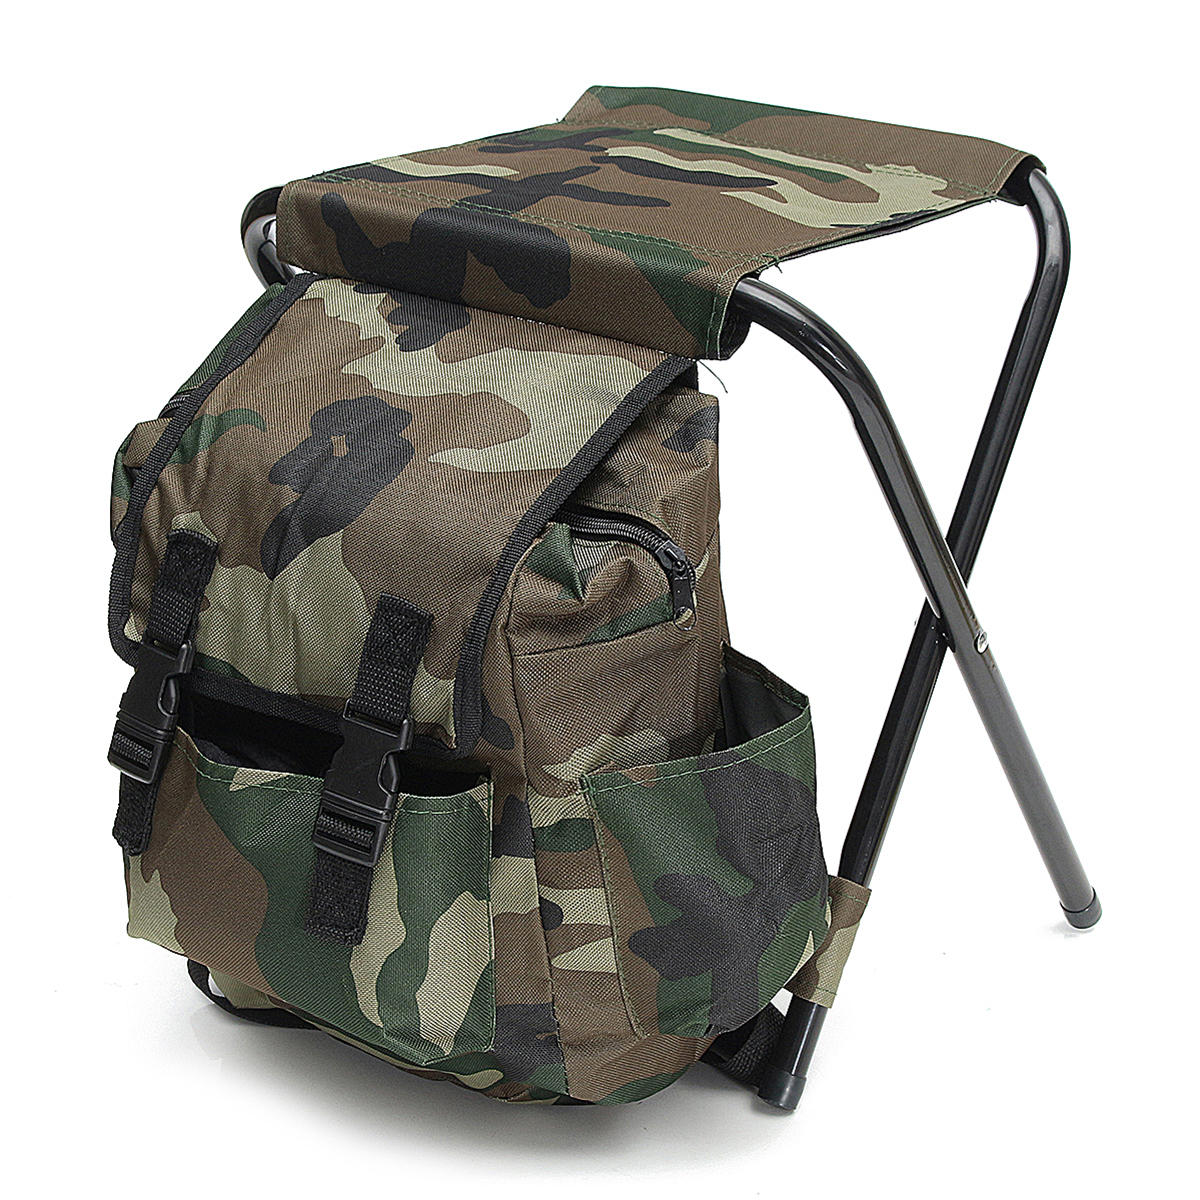 Le pique-nique de camping pliable portatif extérieur de sac à dos de chaise de sac à dos pliable charge 100kg